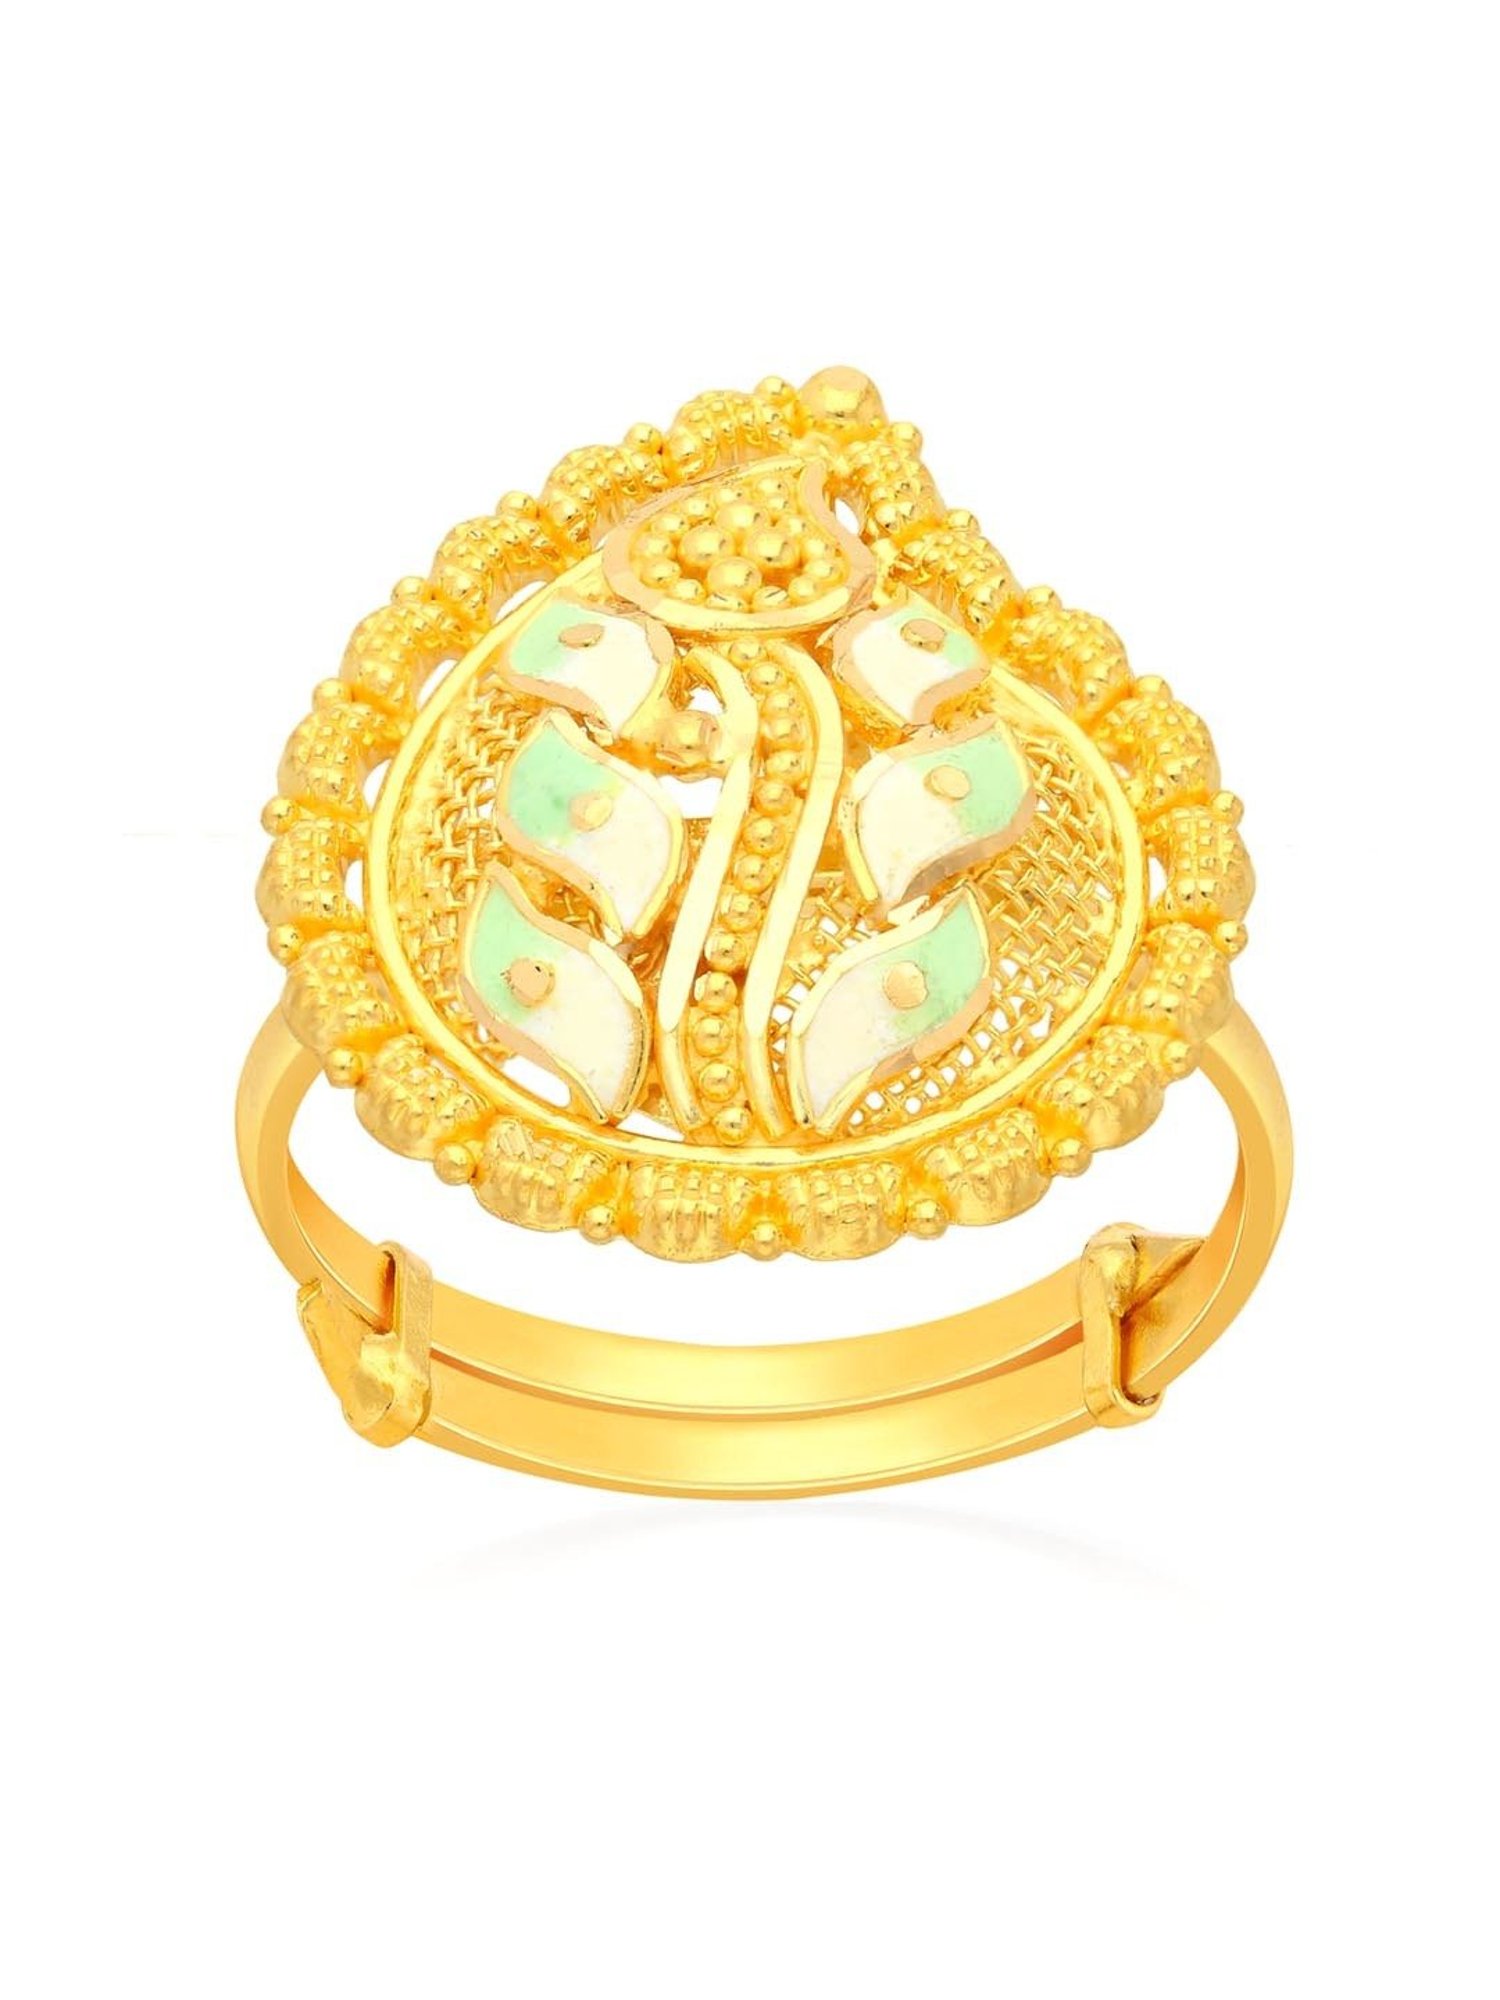 gold rings for men | gold rings | gold stone rings | gold casting ring |  rings for men | men ring online | gold rings online | g